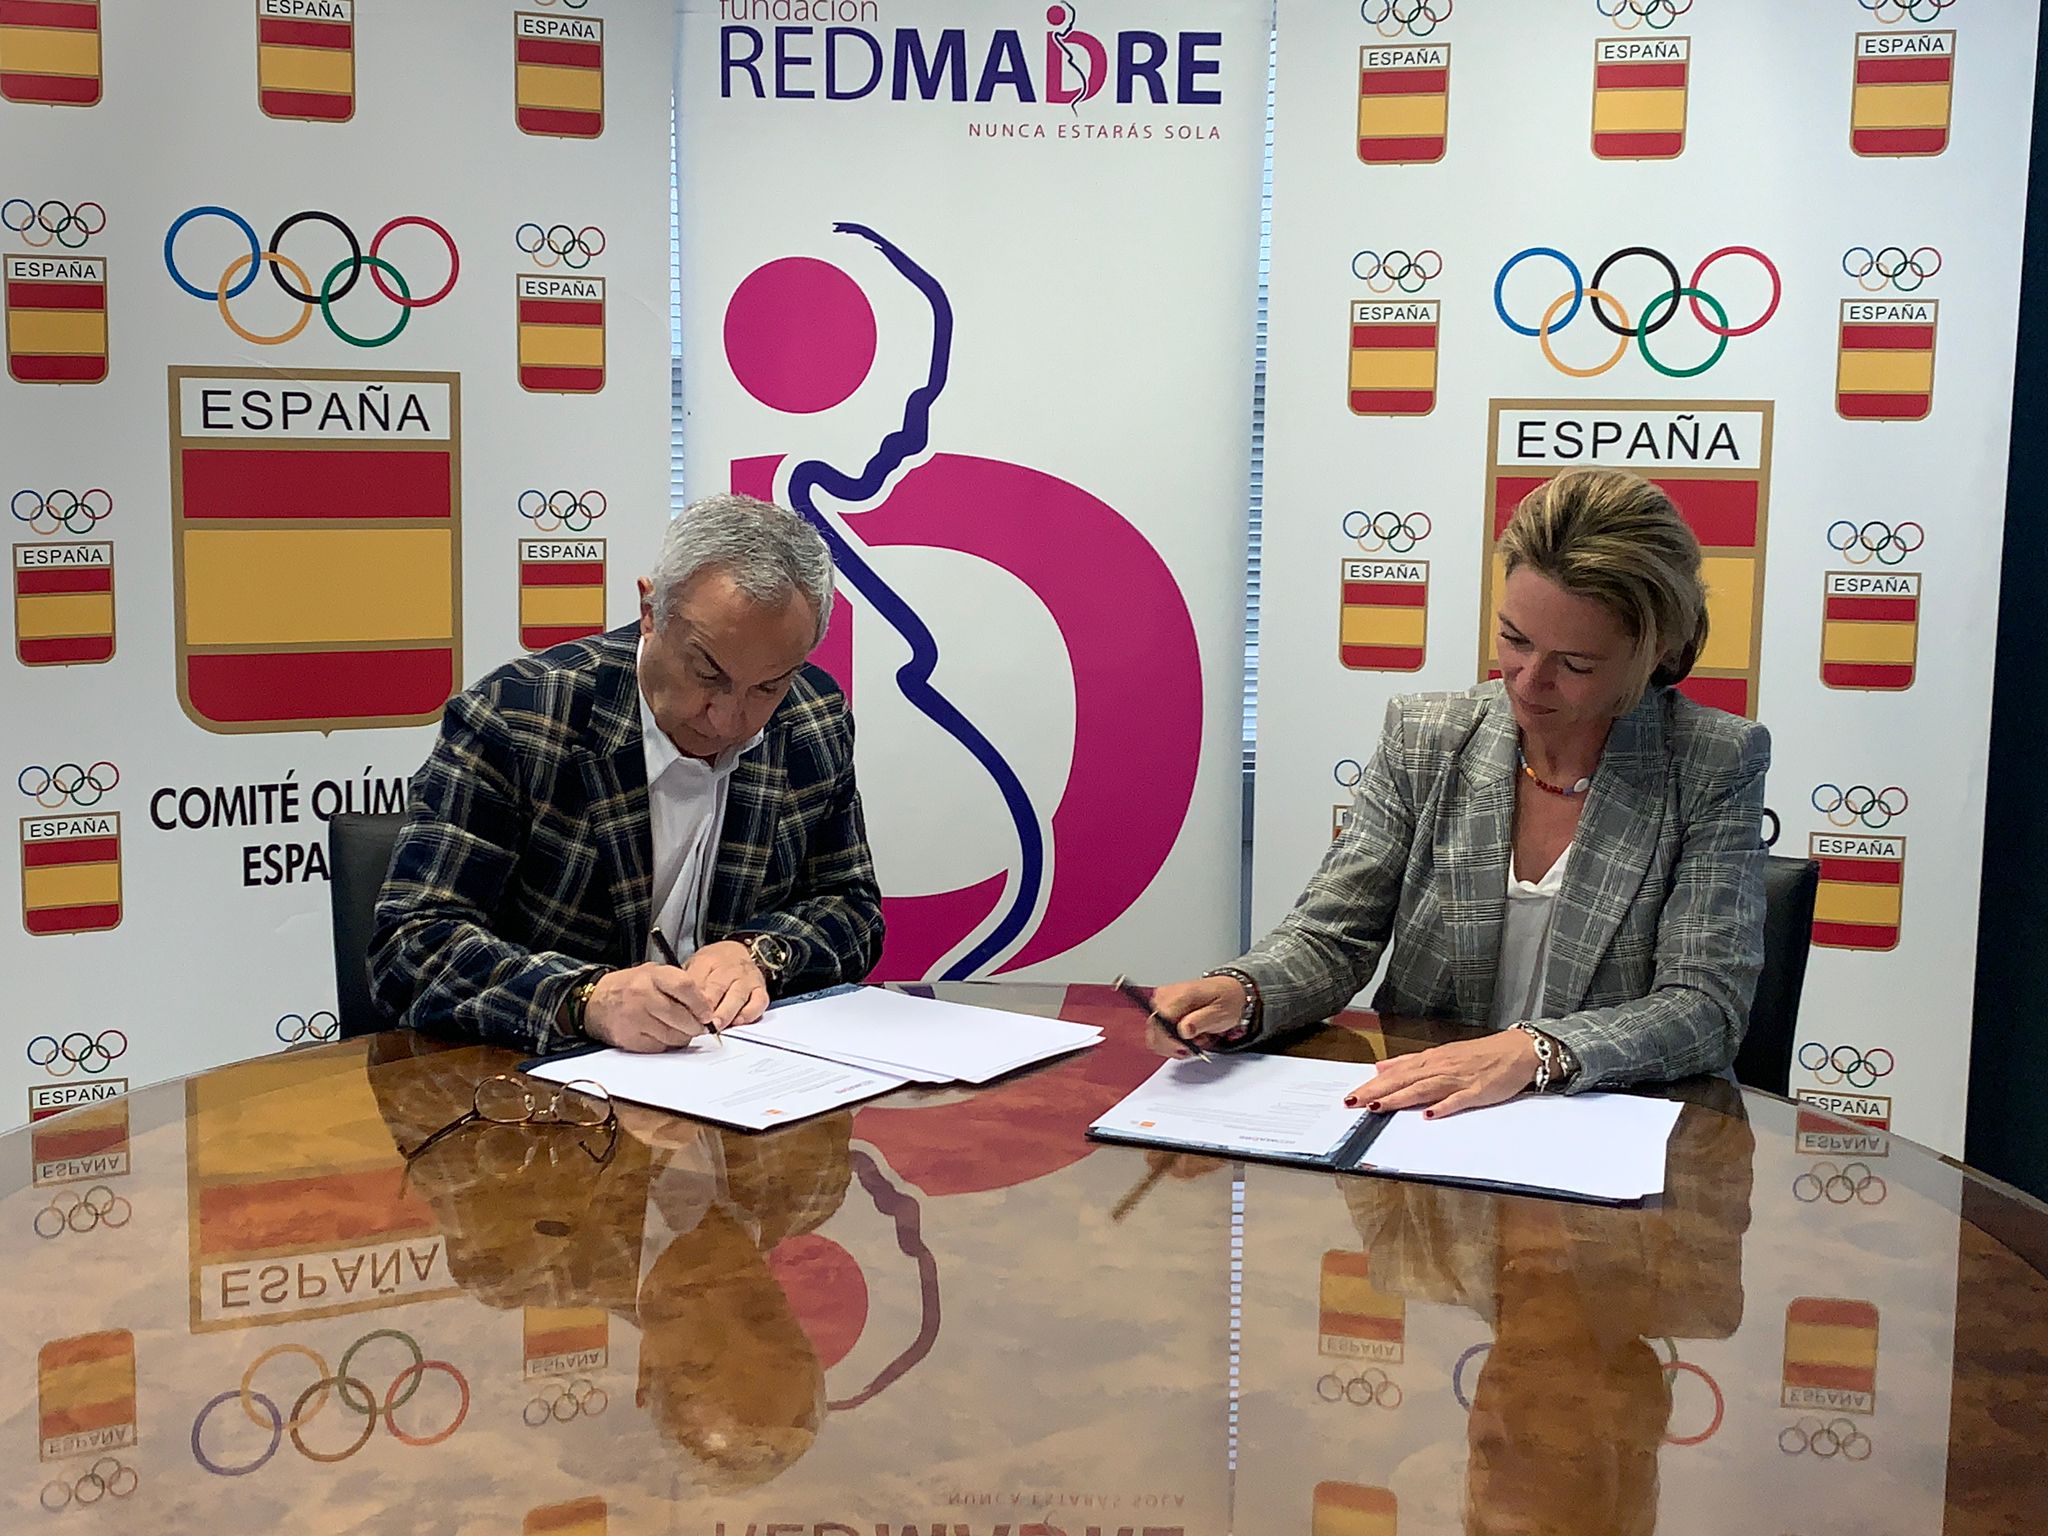 Firman el convenio: Alejandro Blanco, presidente del COE y Maria Torrego, presidenta de Fundación REDMADRE. 